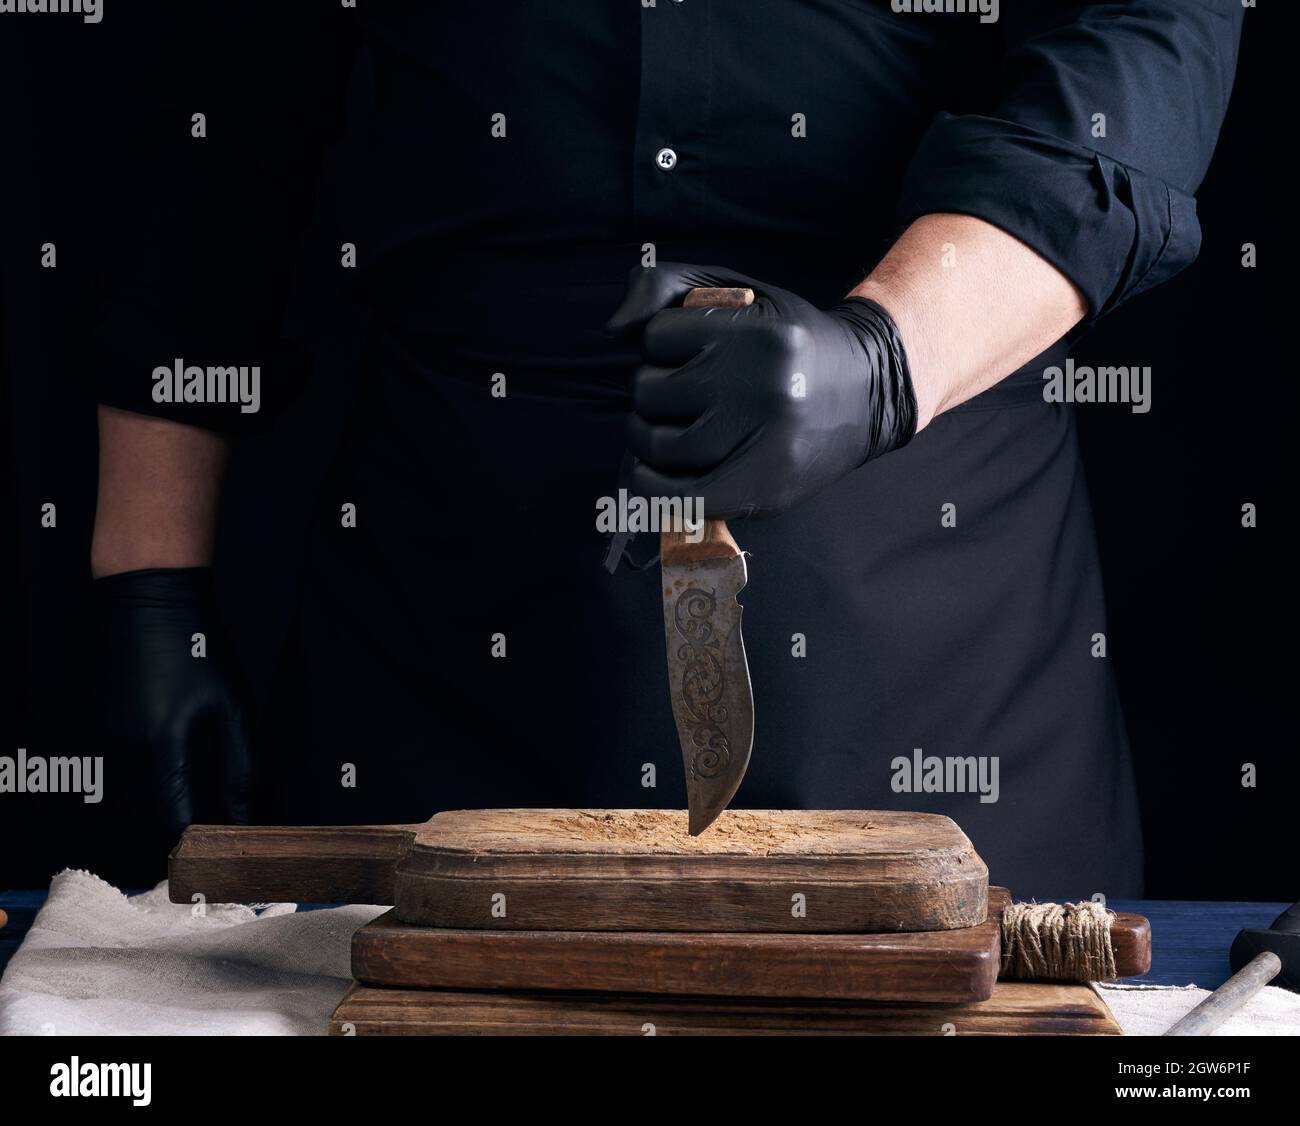 Le chef dans Une chemise noire et des gants en latex noir tient Un couteau  de cuisine Vintage pour couper la viande, la clé basse Photo Stock - Alamy